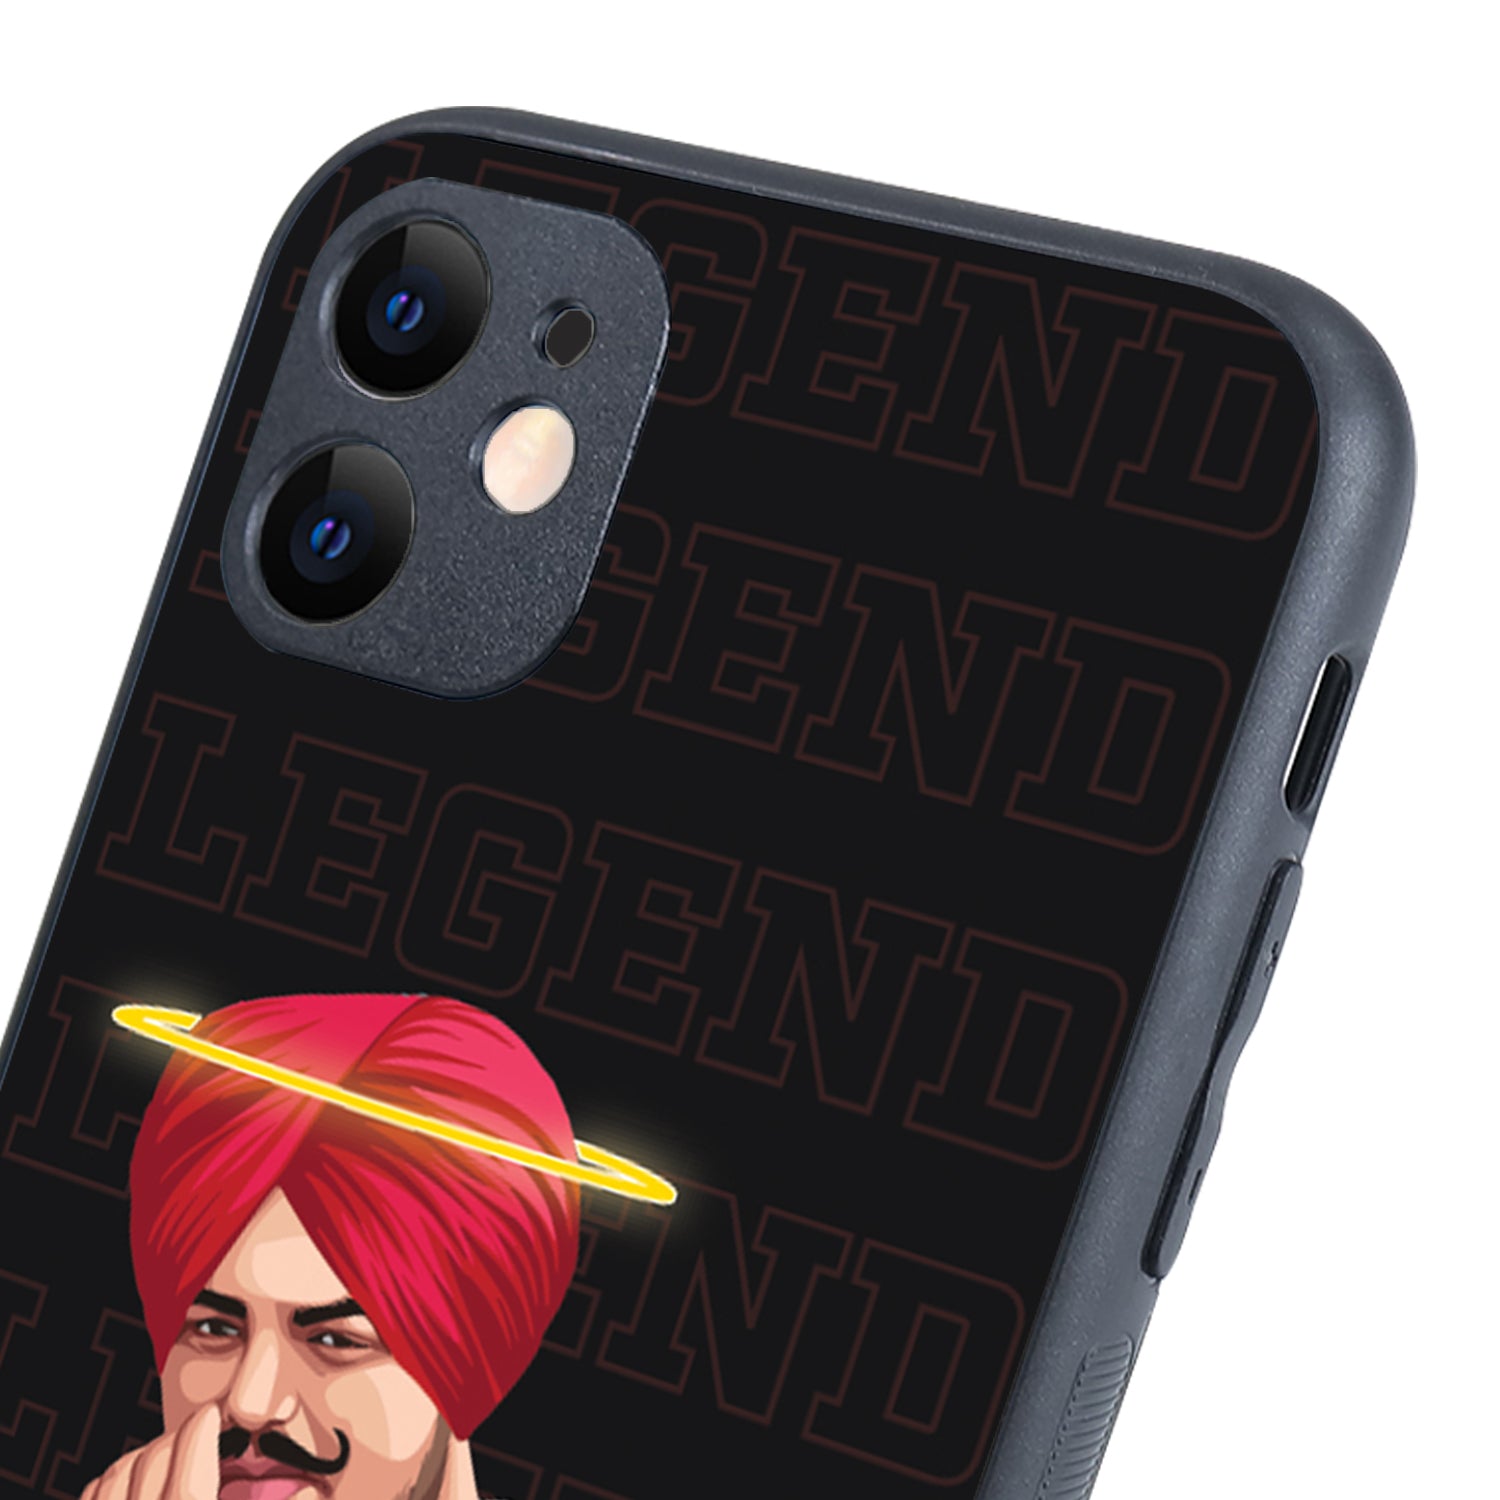 Legend Never Die Black Sidhu Moosewala iPhone 11 Case